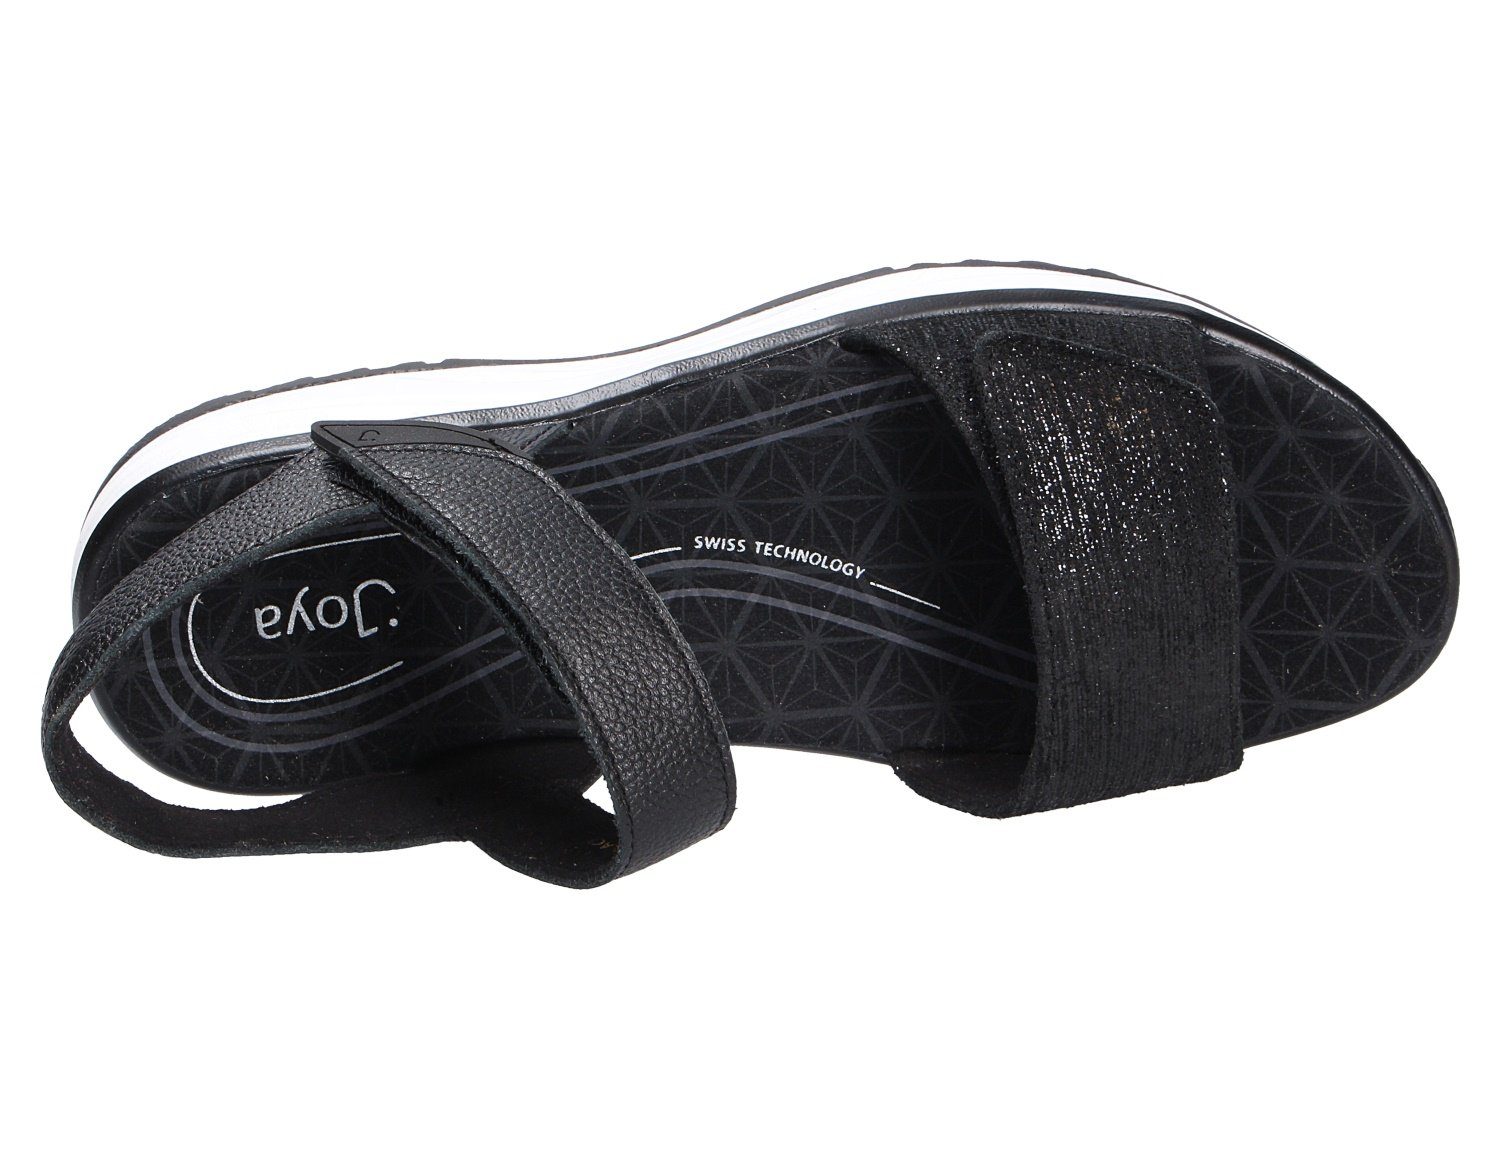 Joya Weicher BLACK FLORES Sandale Gehcomfort